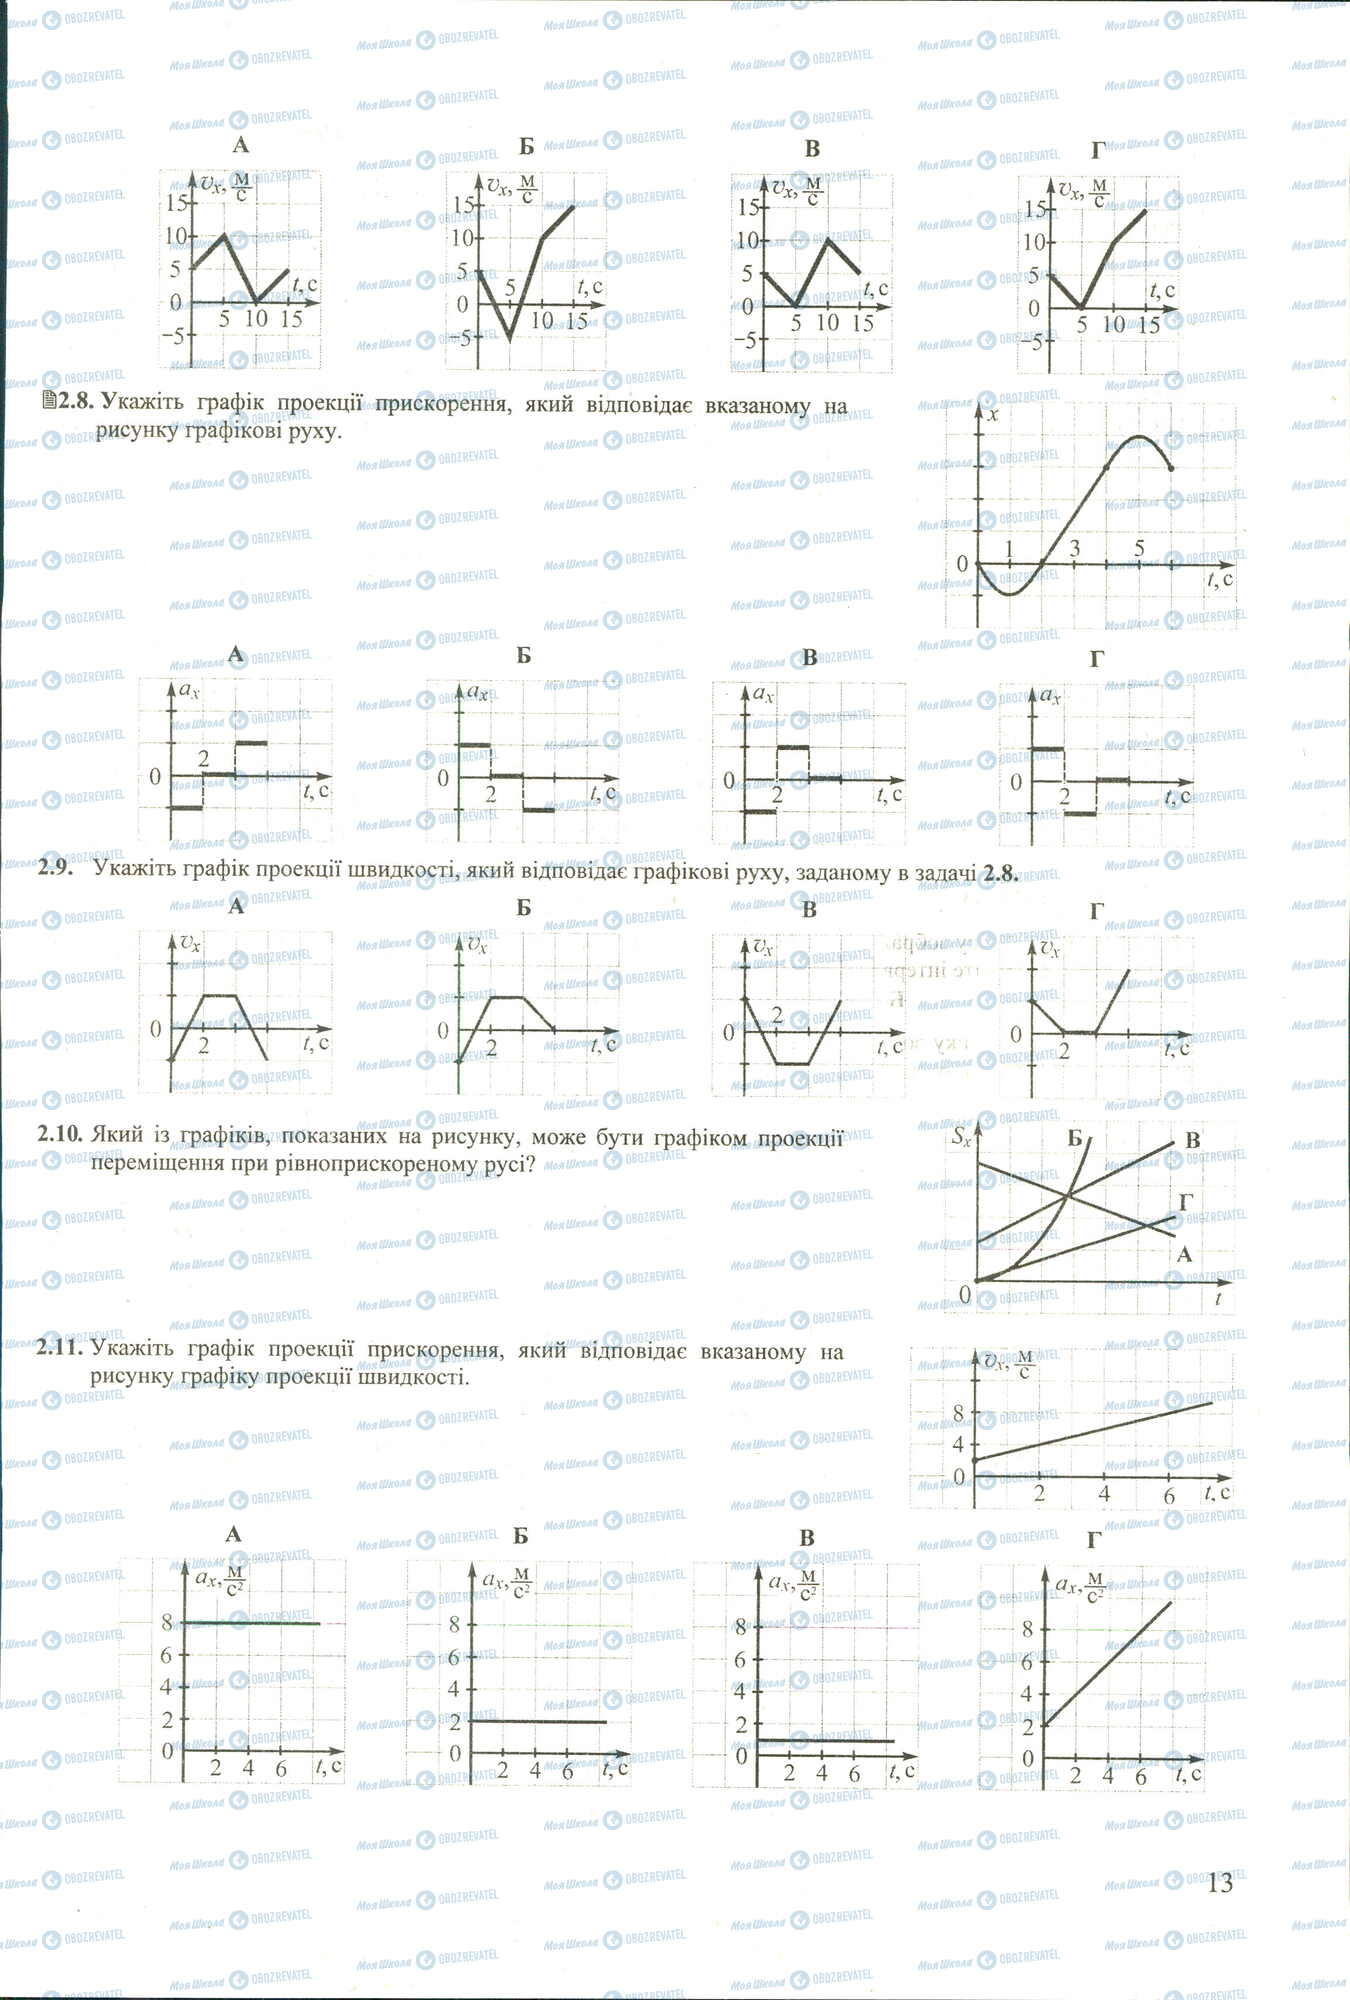 ЗНО Физика 11 класс страница 8-11